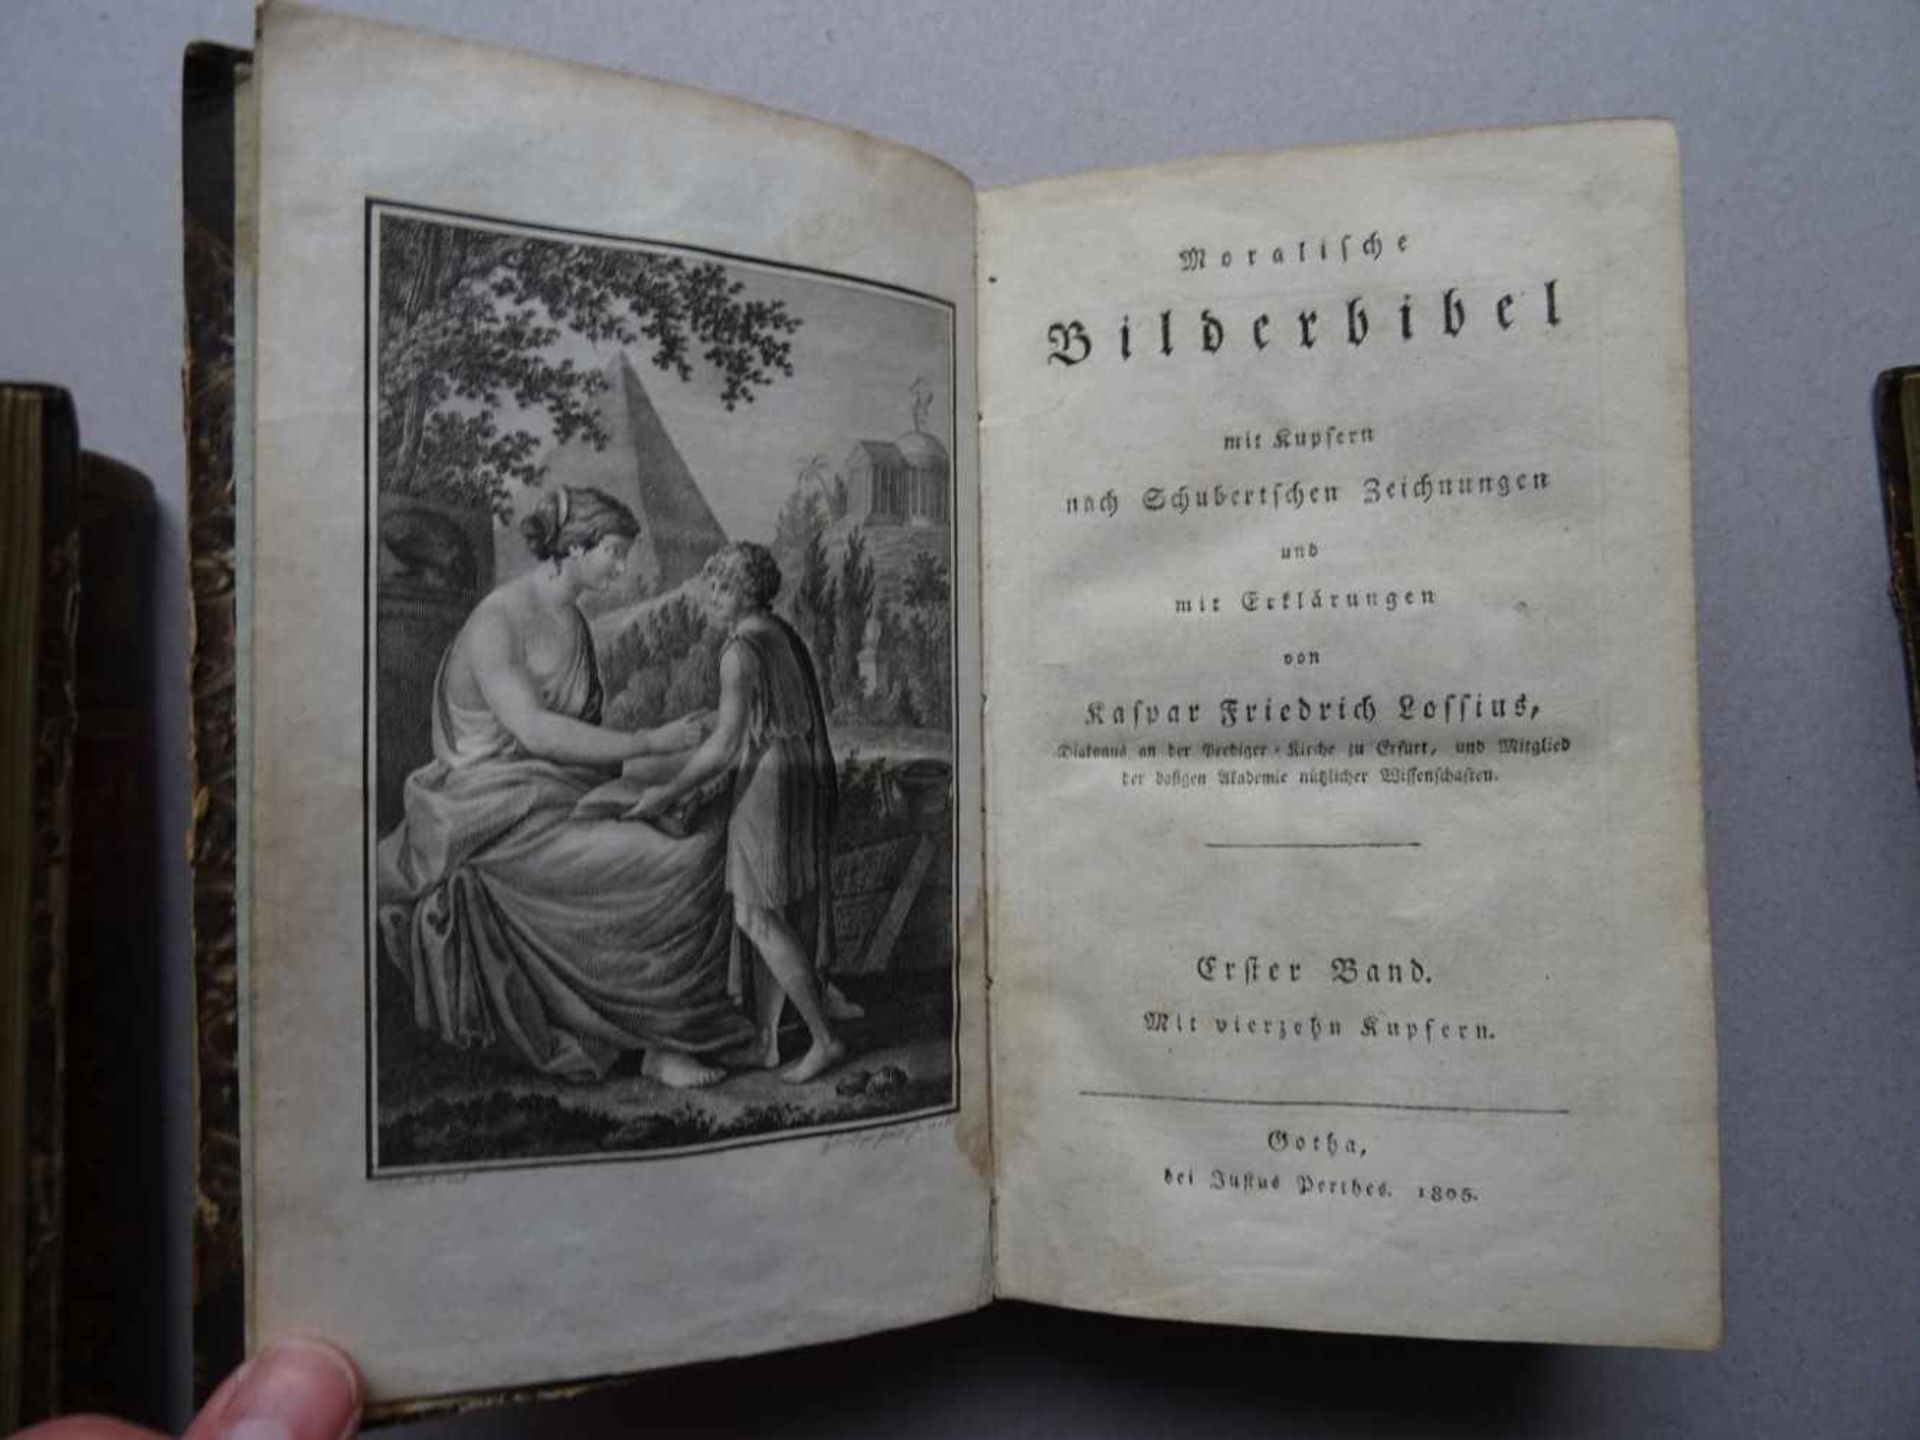 Lossius, K.F.Moralische Bilderbibel mit Kupfern nach Schubertschen Zeichnungen und mit - Image 4 of 4